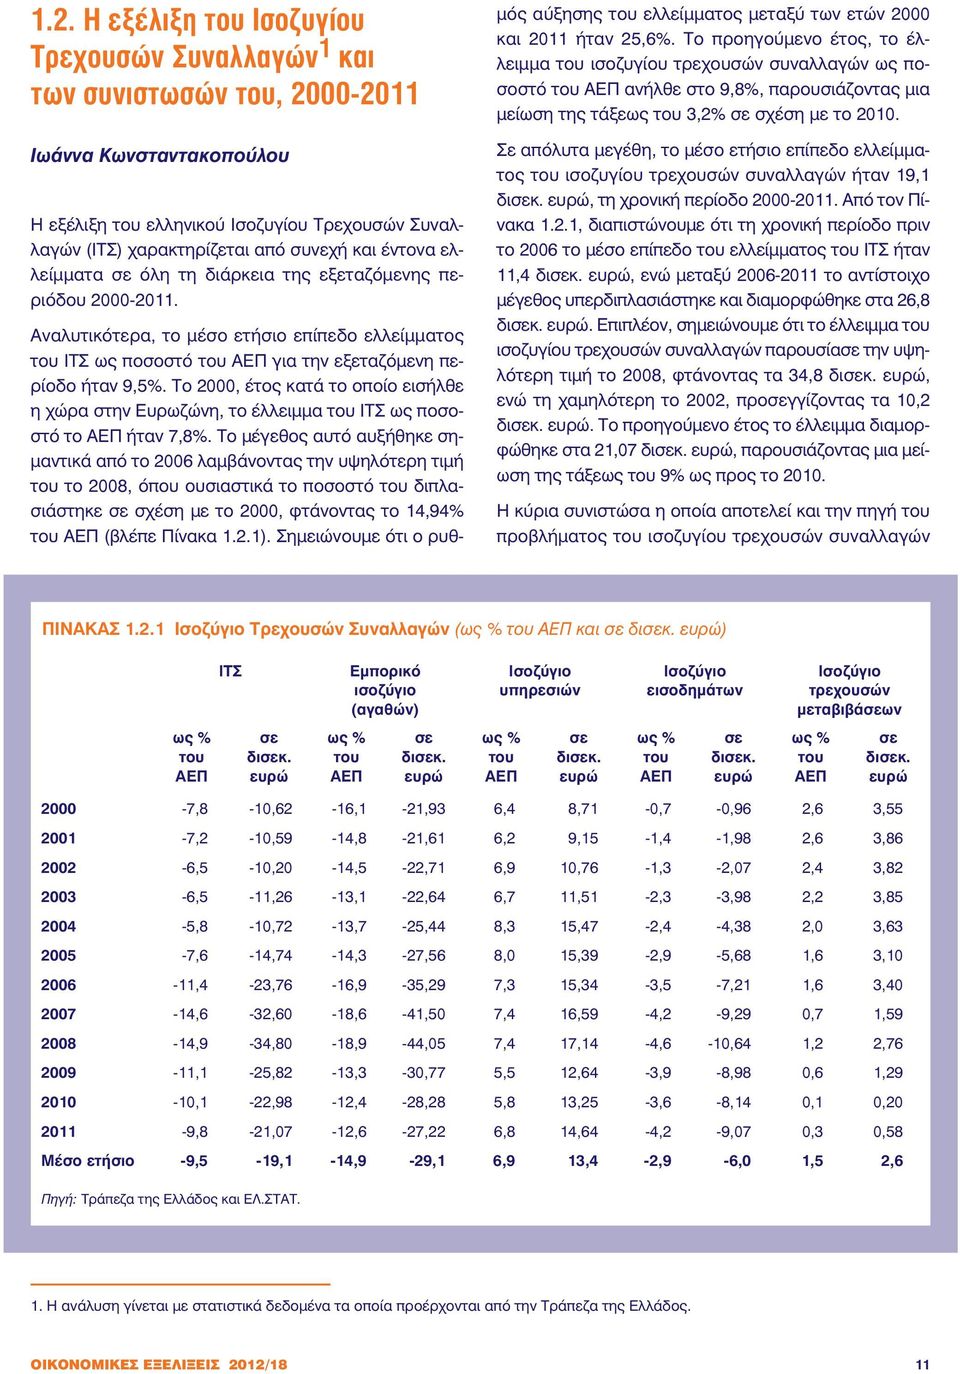 Το 2000, έτος κατά το οποίο εισήλθε η χώρα στην Ευρωζώνη, το έλλειµµα του ΙΤΣ ως ποσοστό το ΑΕΠ ήταν 7,8%.